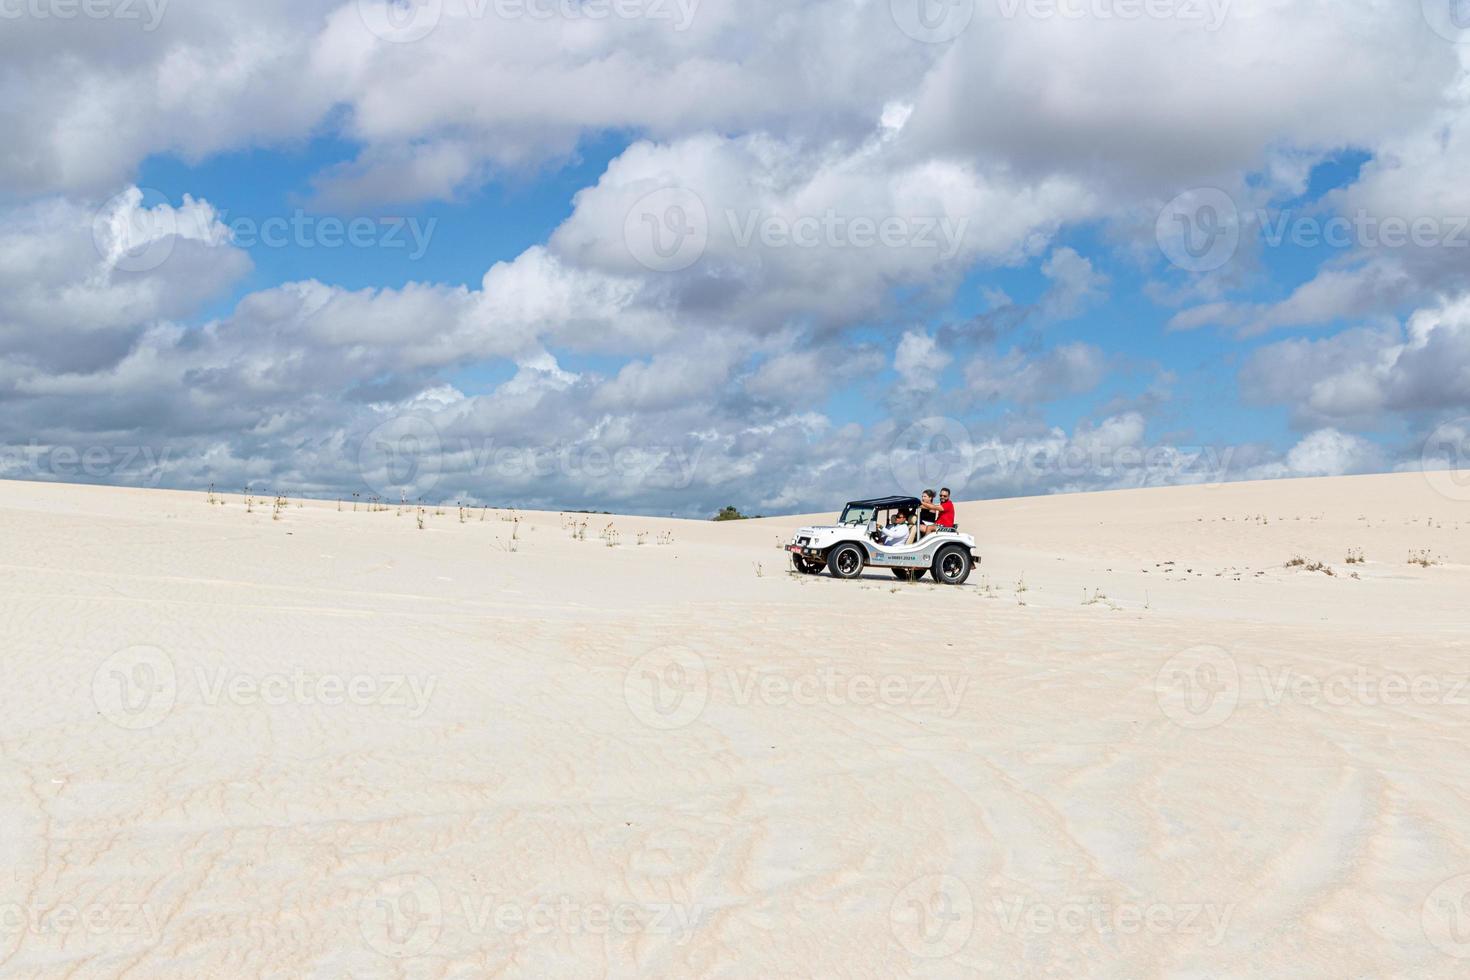 natal, brasil, maio de 2019 - carro de buggy nas areias foto